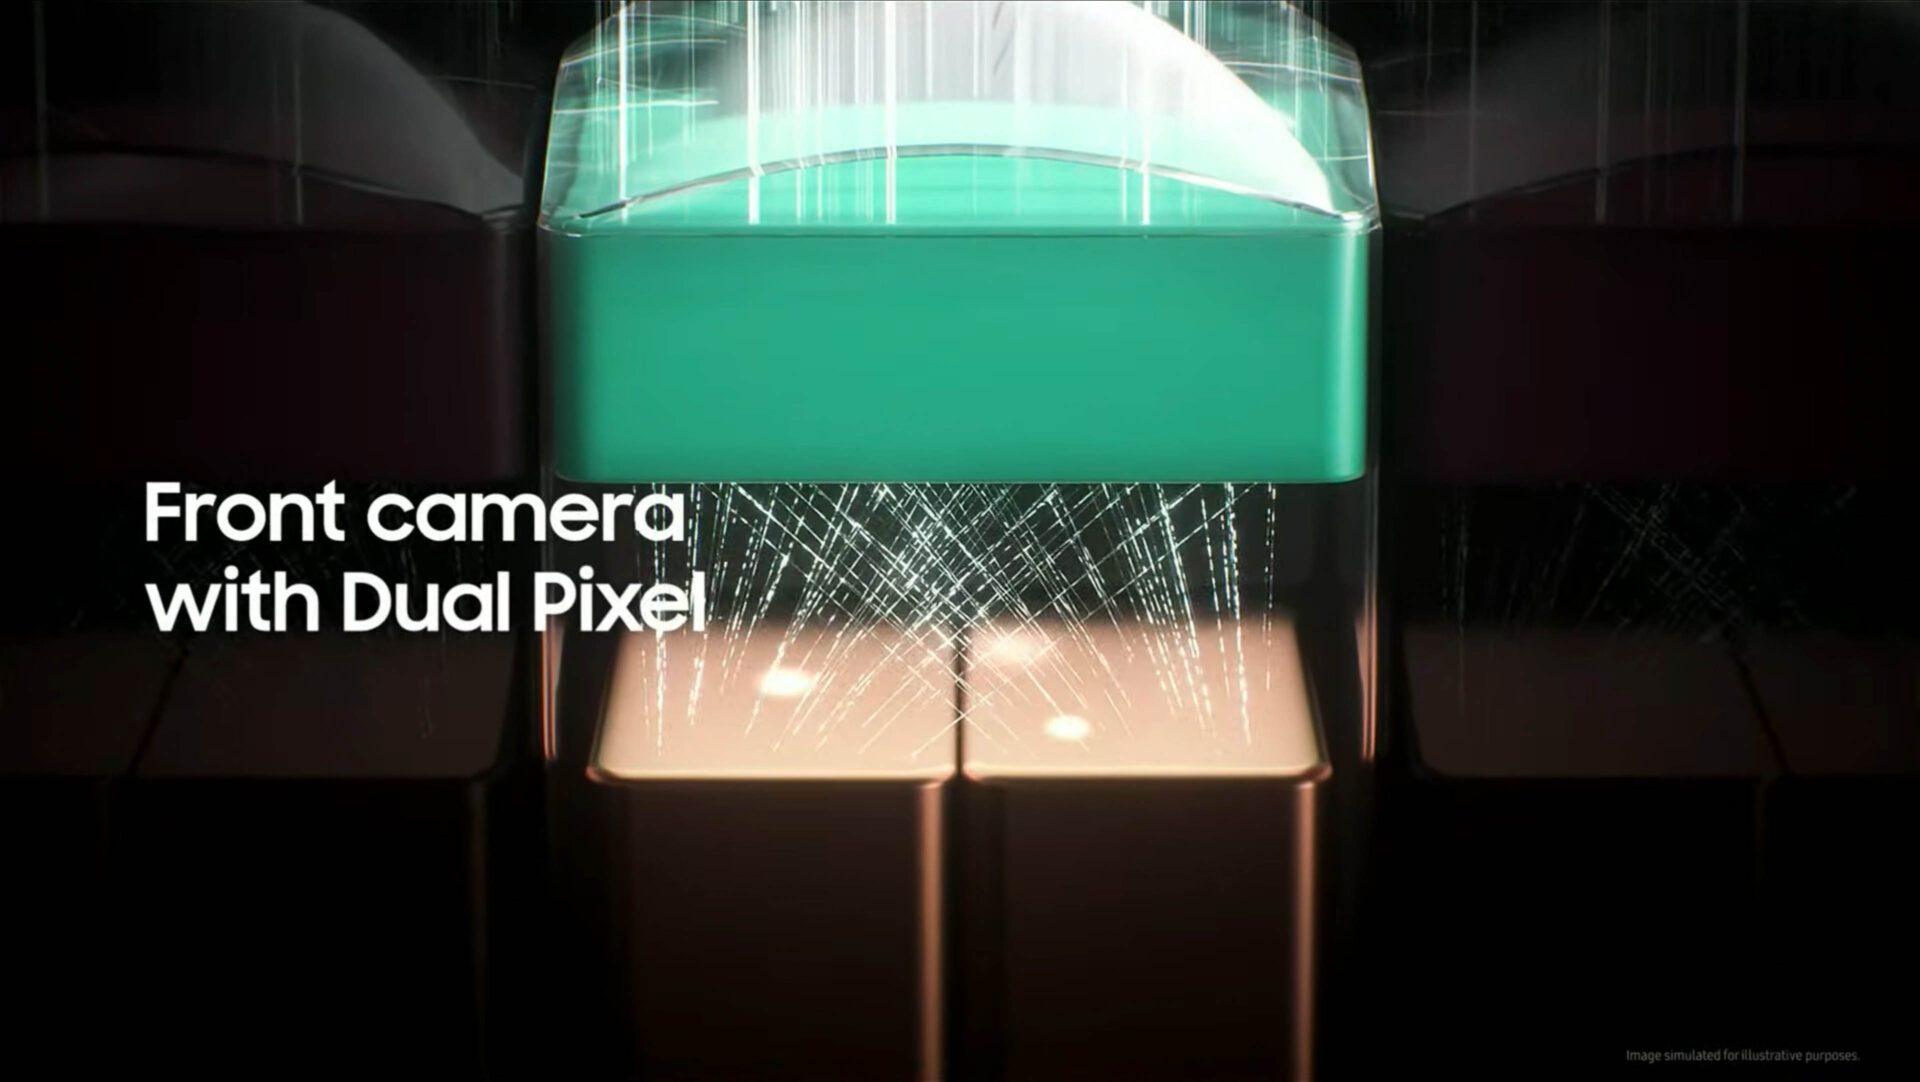 Les capteurs Dual Pixel ont des photodiodes scindées en deux sous la microlentille. Chaque pixel devient alors capable de participer à la mise au point de manière très efficace. Canon utilise le même genre de technologie pour les capteurs de ces hybrides.